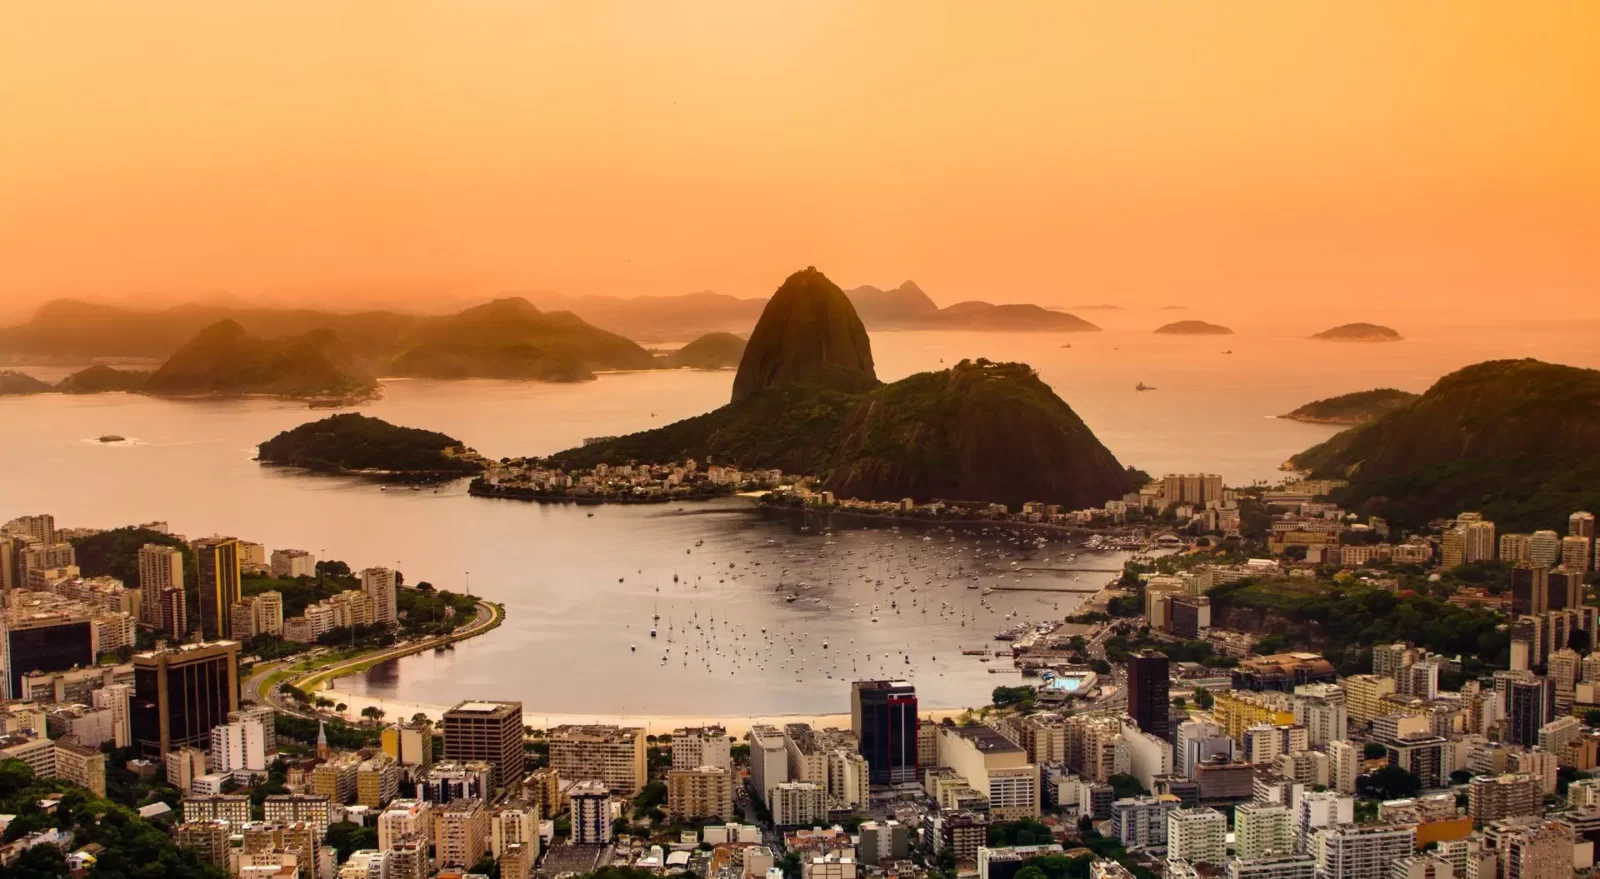 Sunset at Rio de Janeiro, Brazil